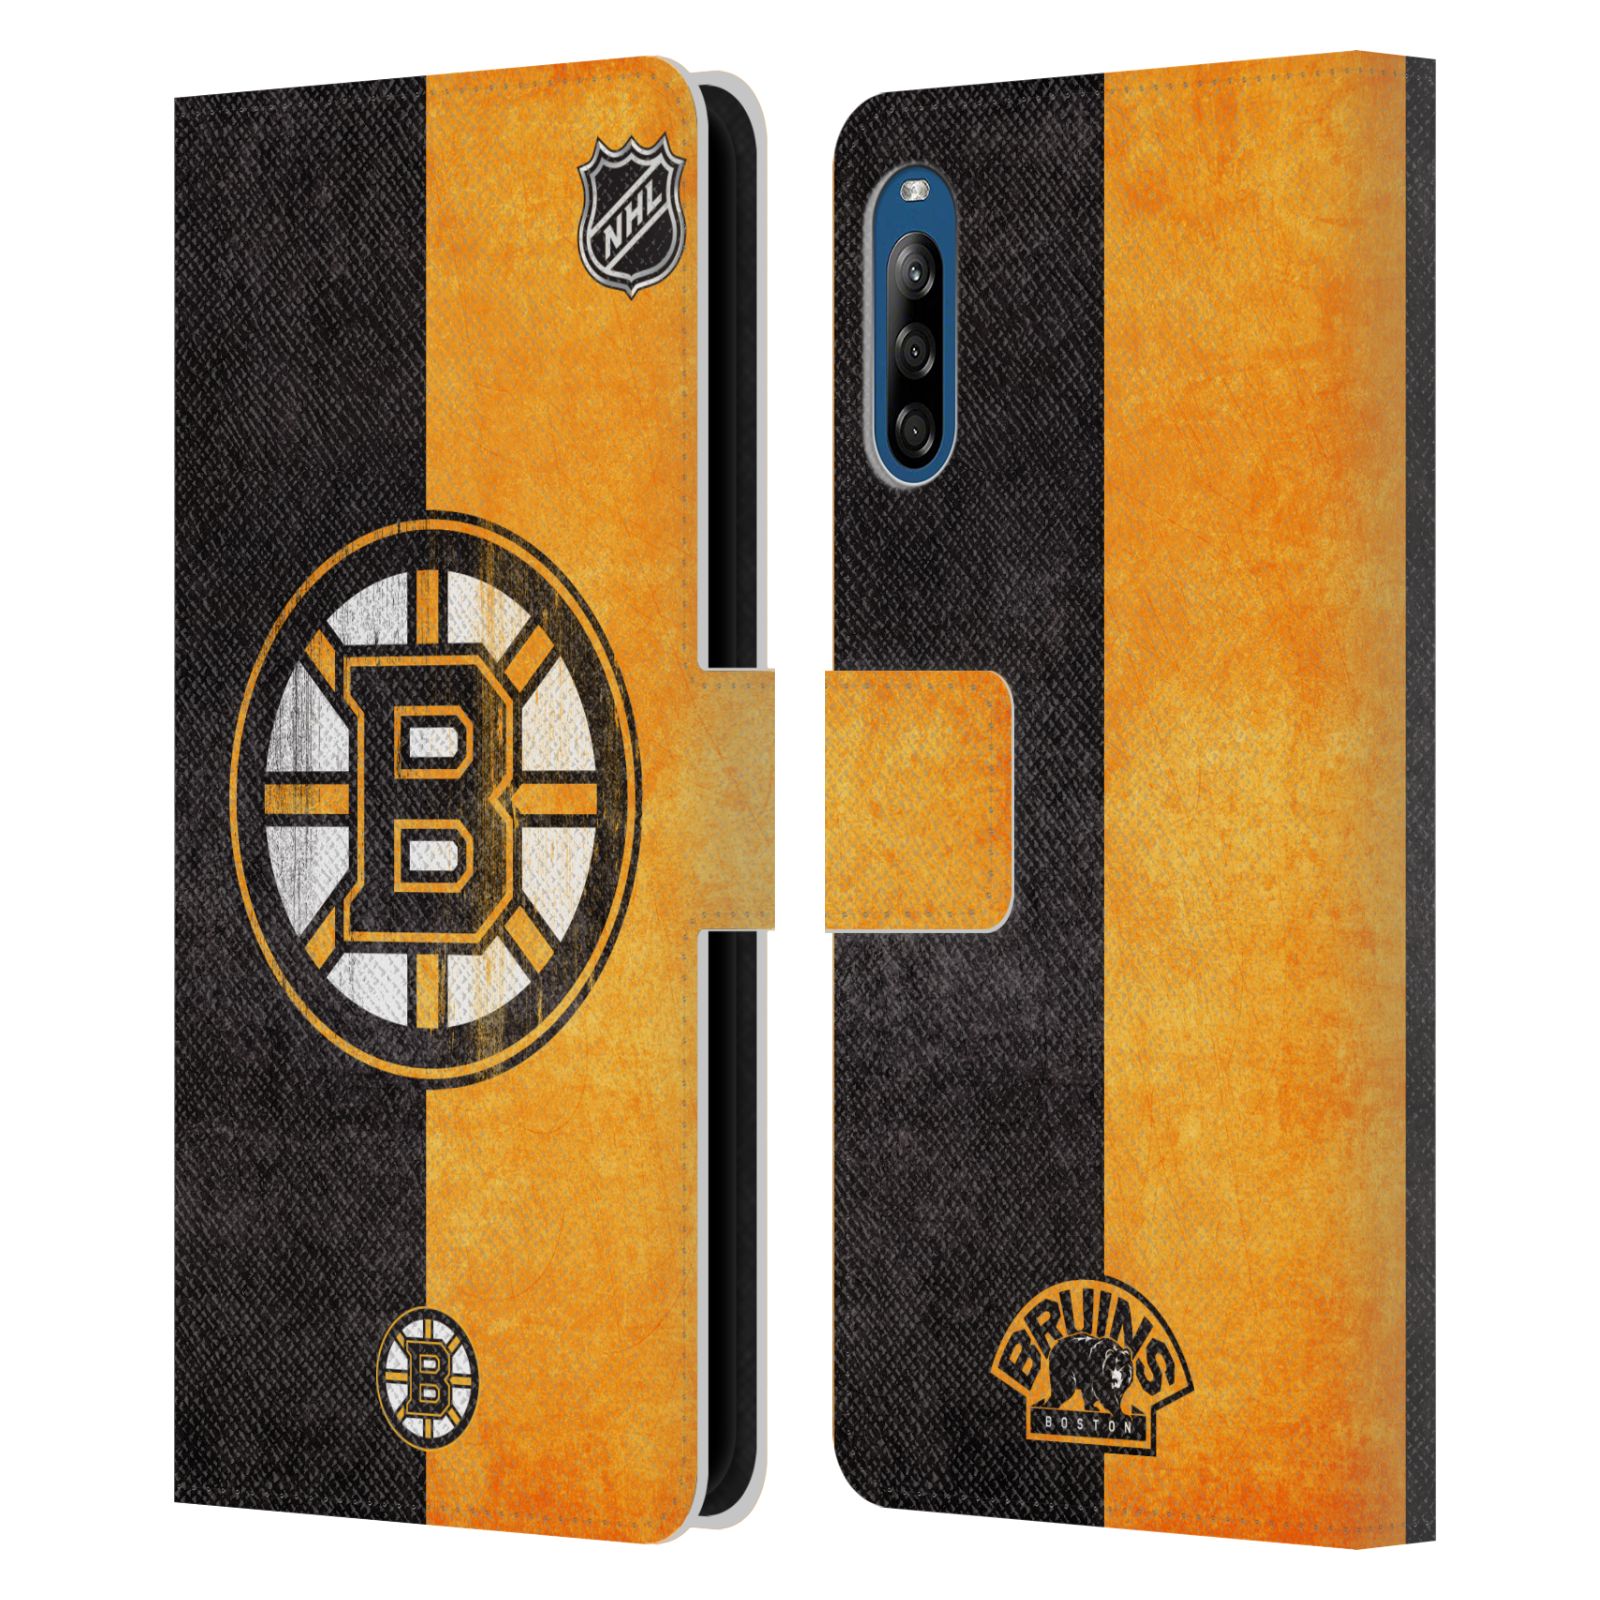 Pouzdro pro mobil Sony Xperia L4 - HEAD CASE - NHL - Boston Bruins - Vintage Znak